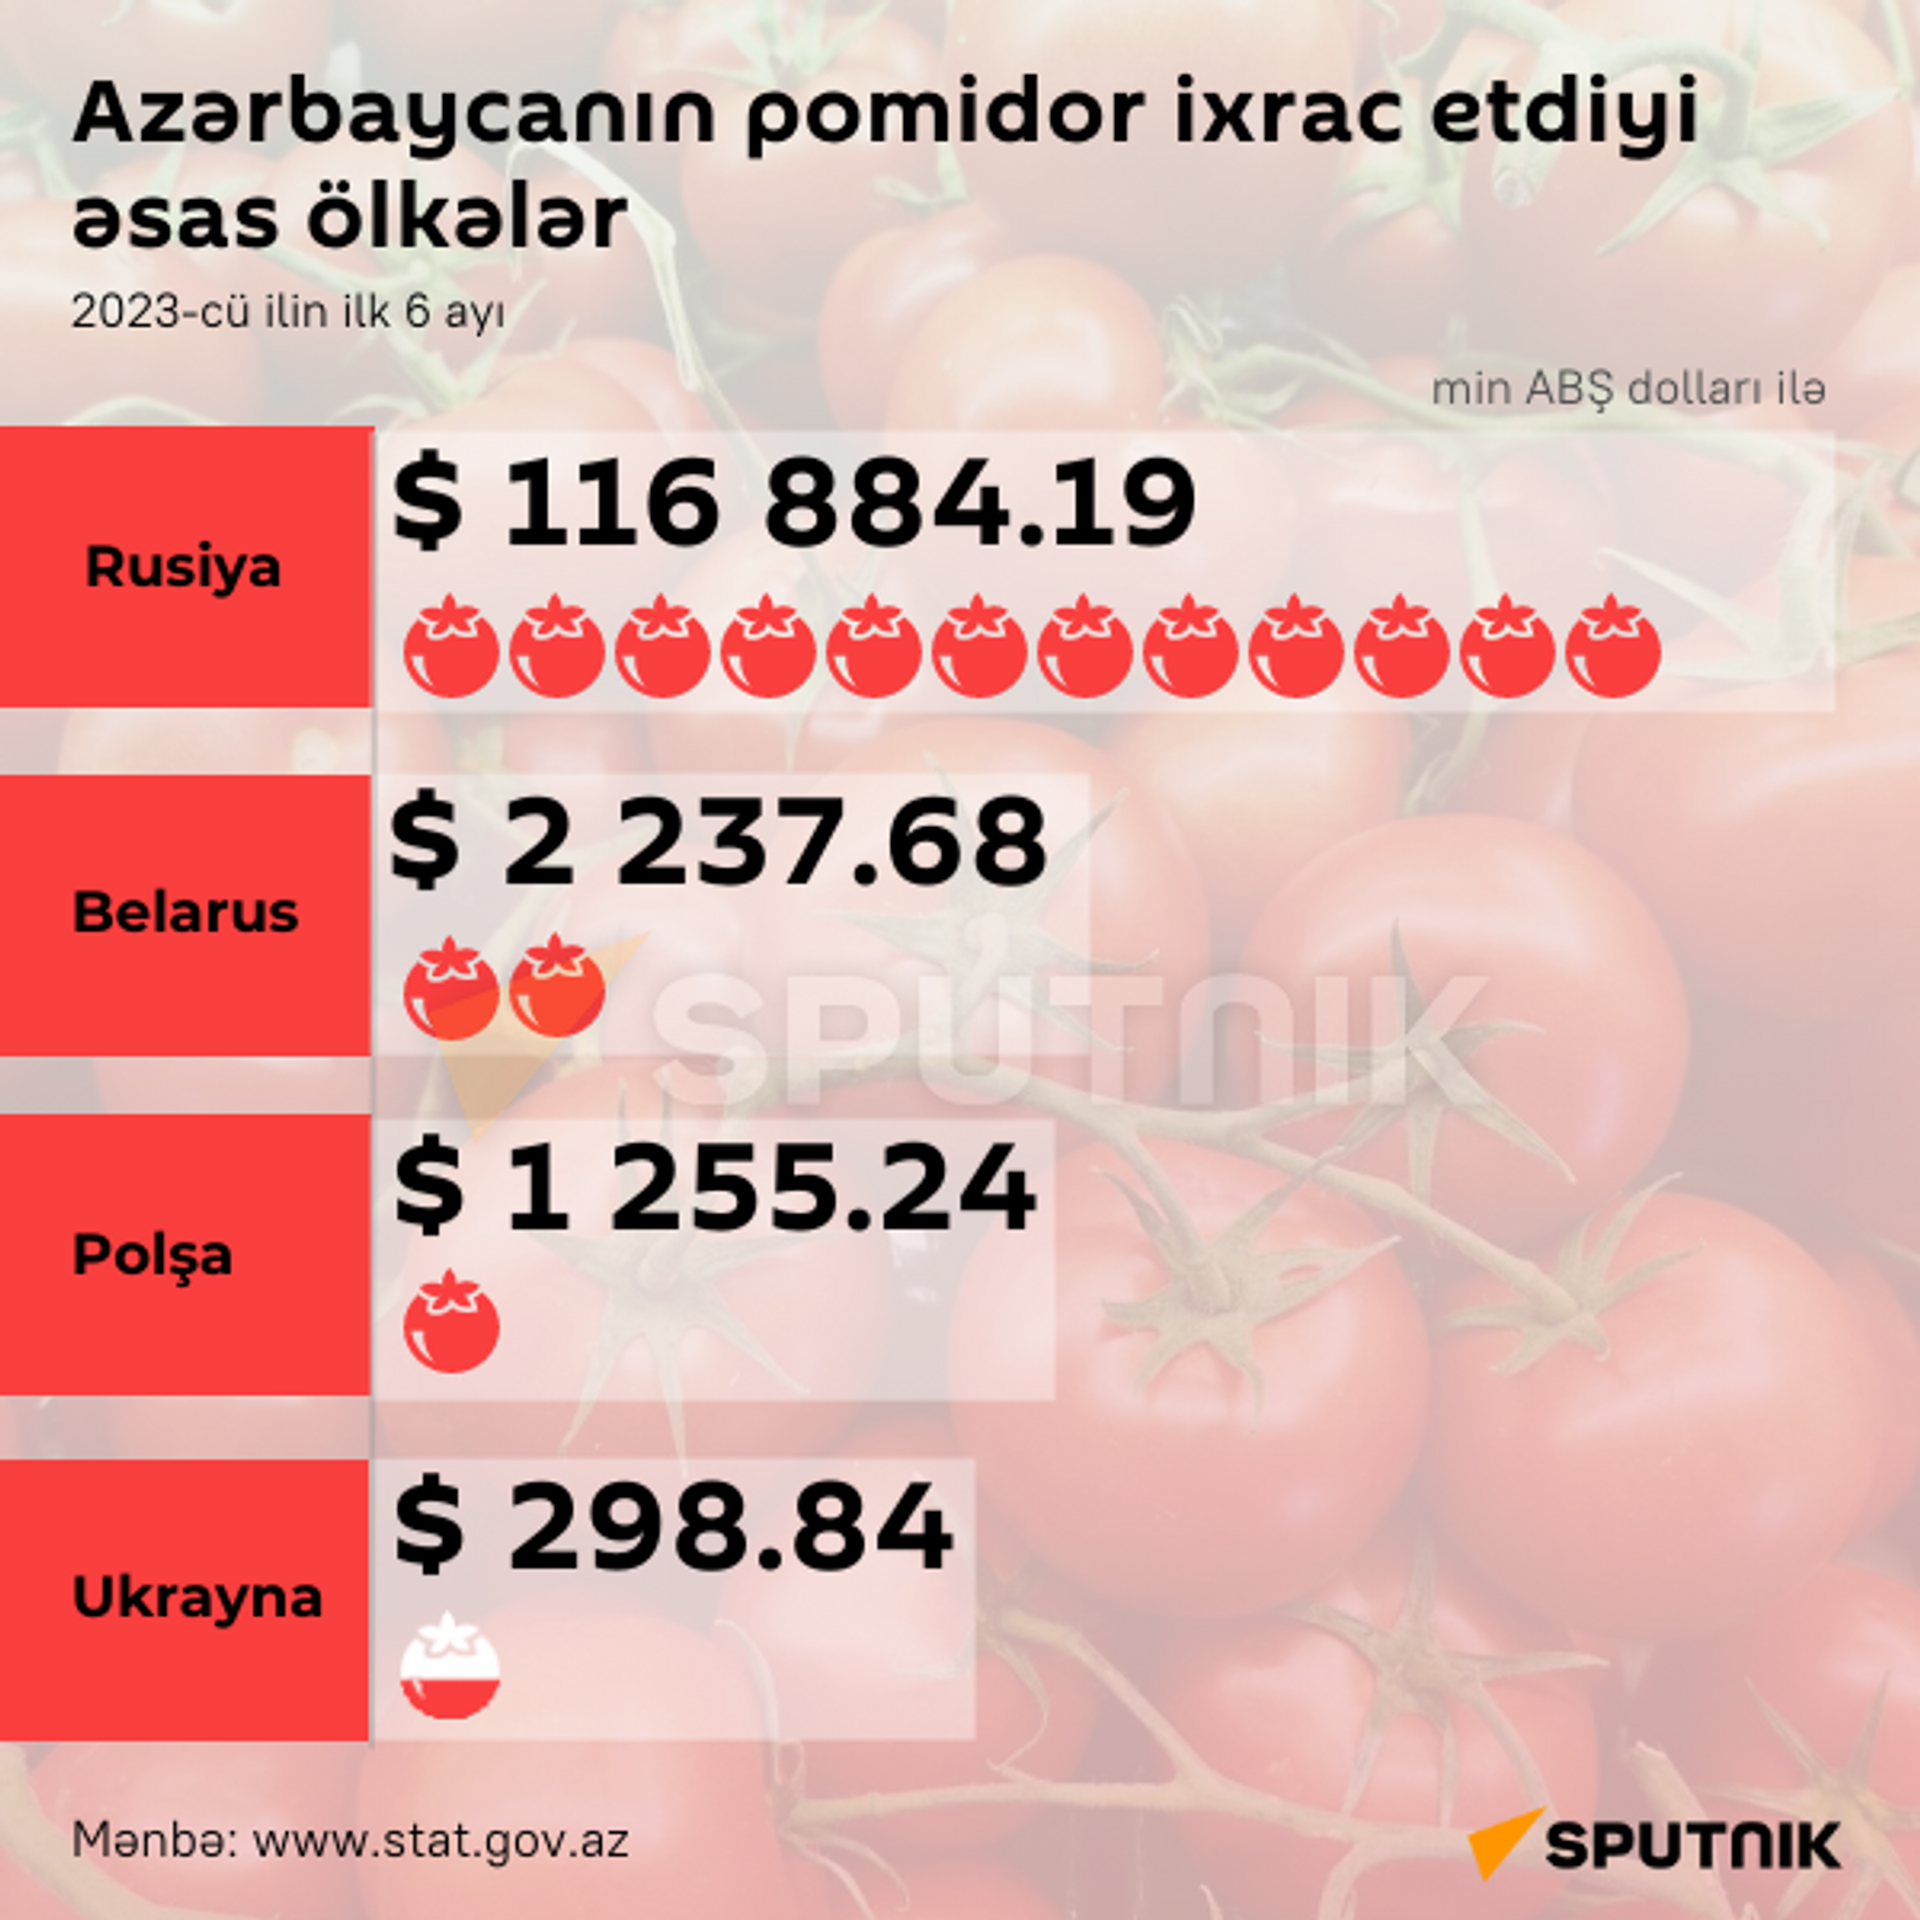 İnfoqrafika: Azərbaycanın pomidor ixrac etdiyi əsas ölkələt - Sputnik Azərbaycan, 1920, 30.09.2023